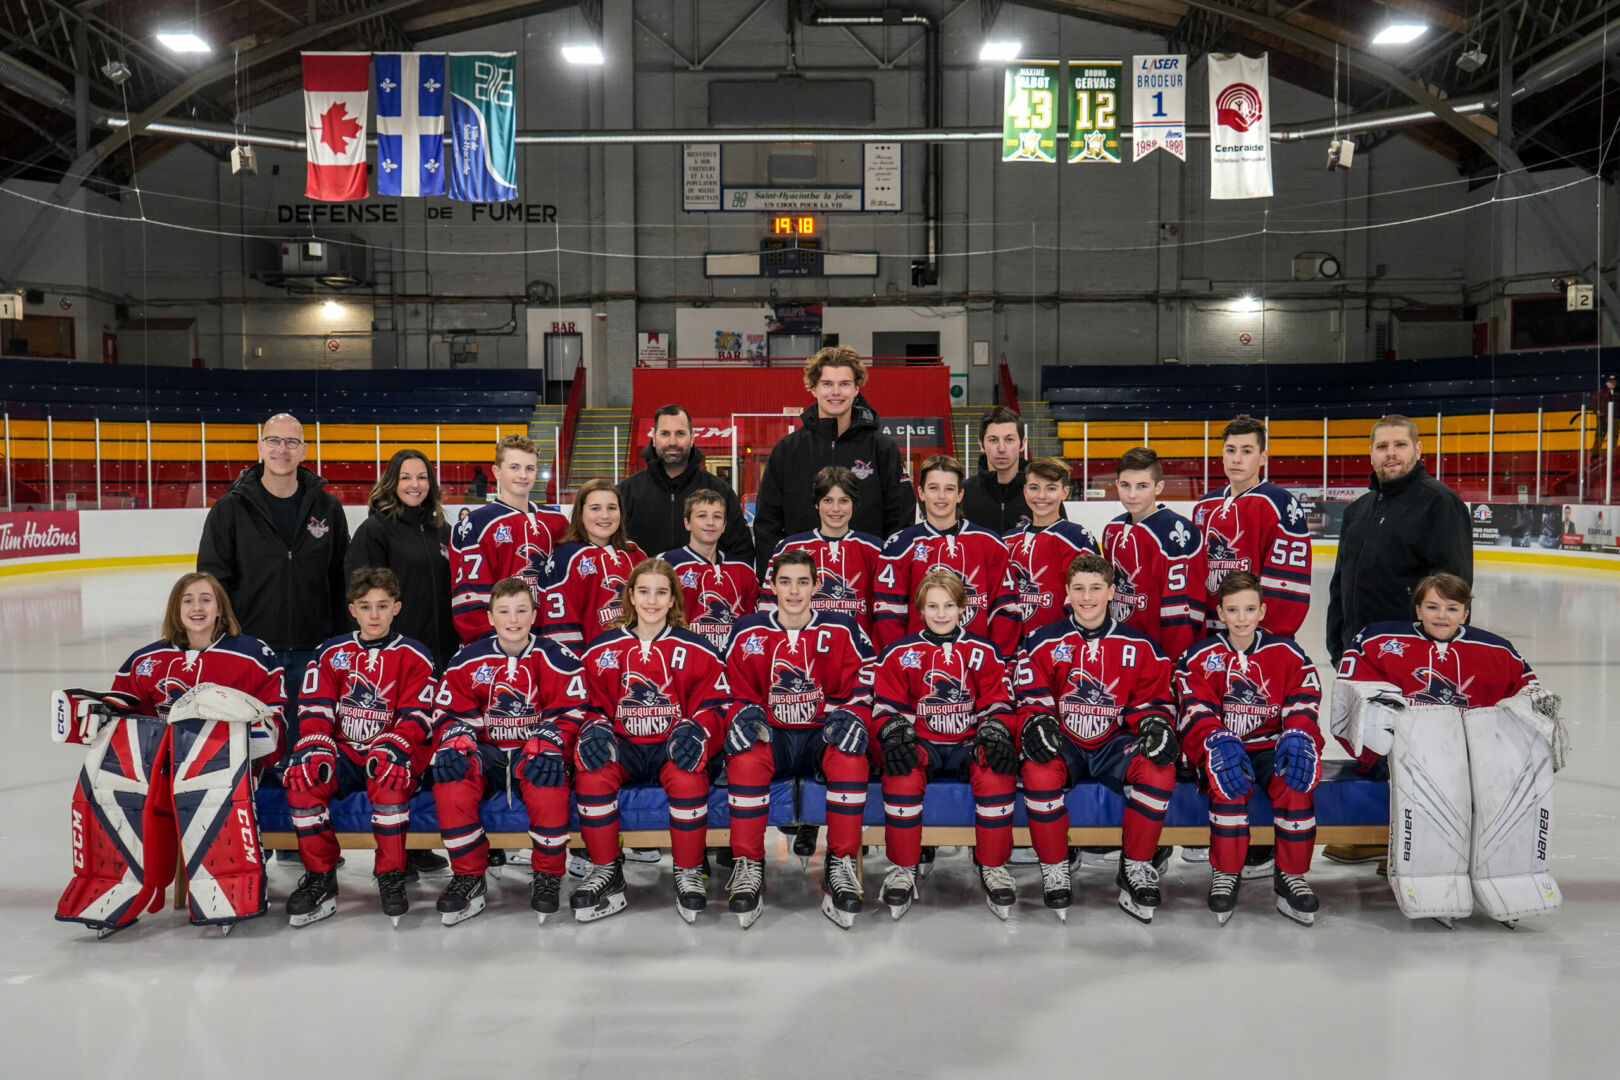 Les Mousquetaires M13 AA de Saint-Hyacinthe vont participer au Tournoi international de hockey pee-wee de Québec. Photo François Larivière | Le Courrier ©